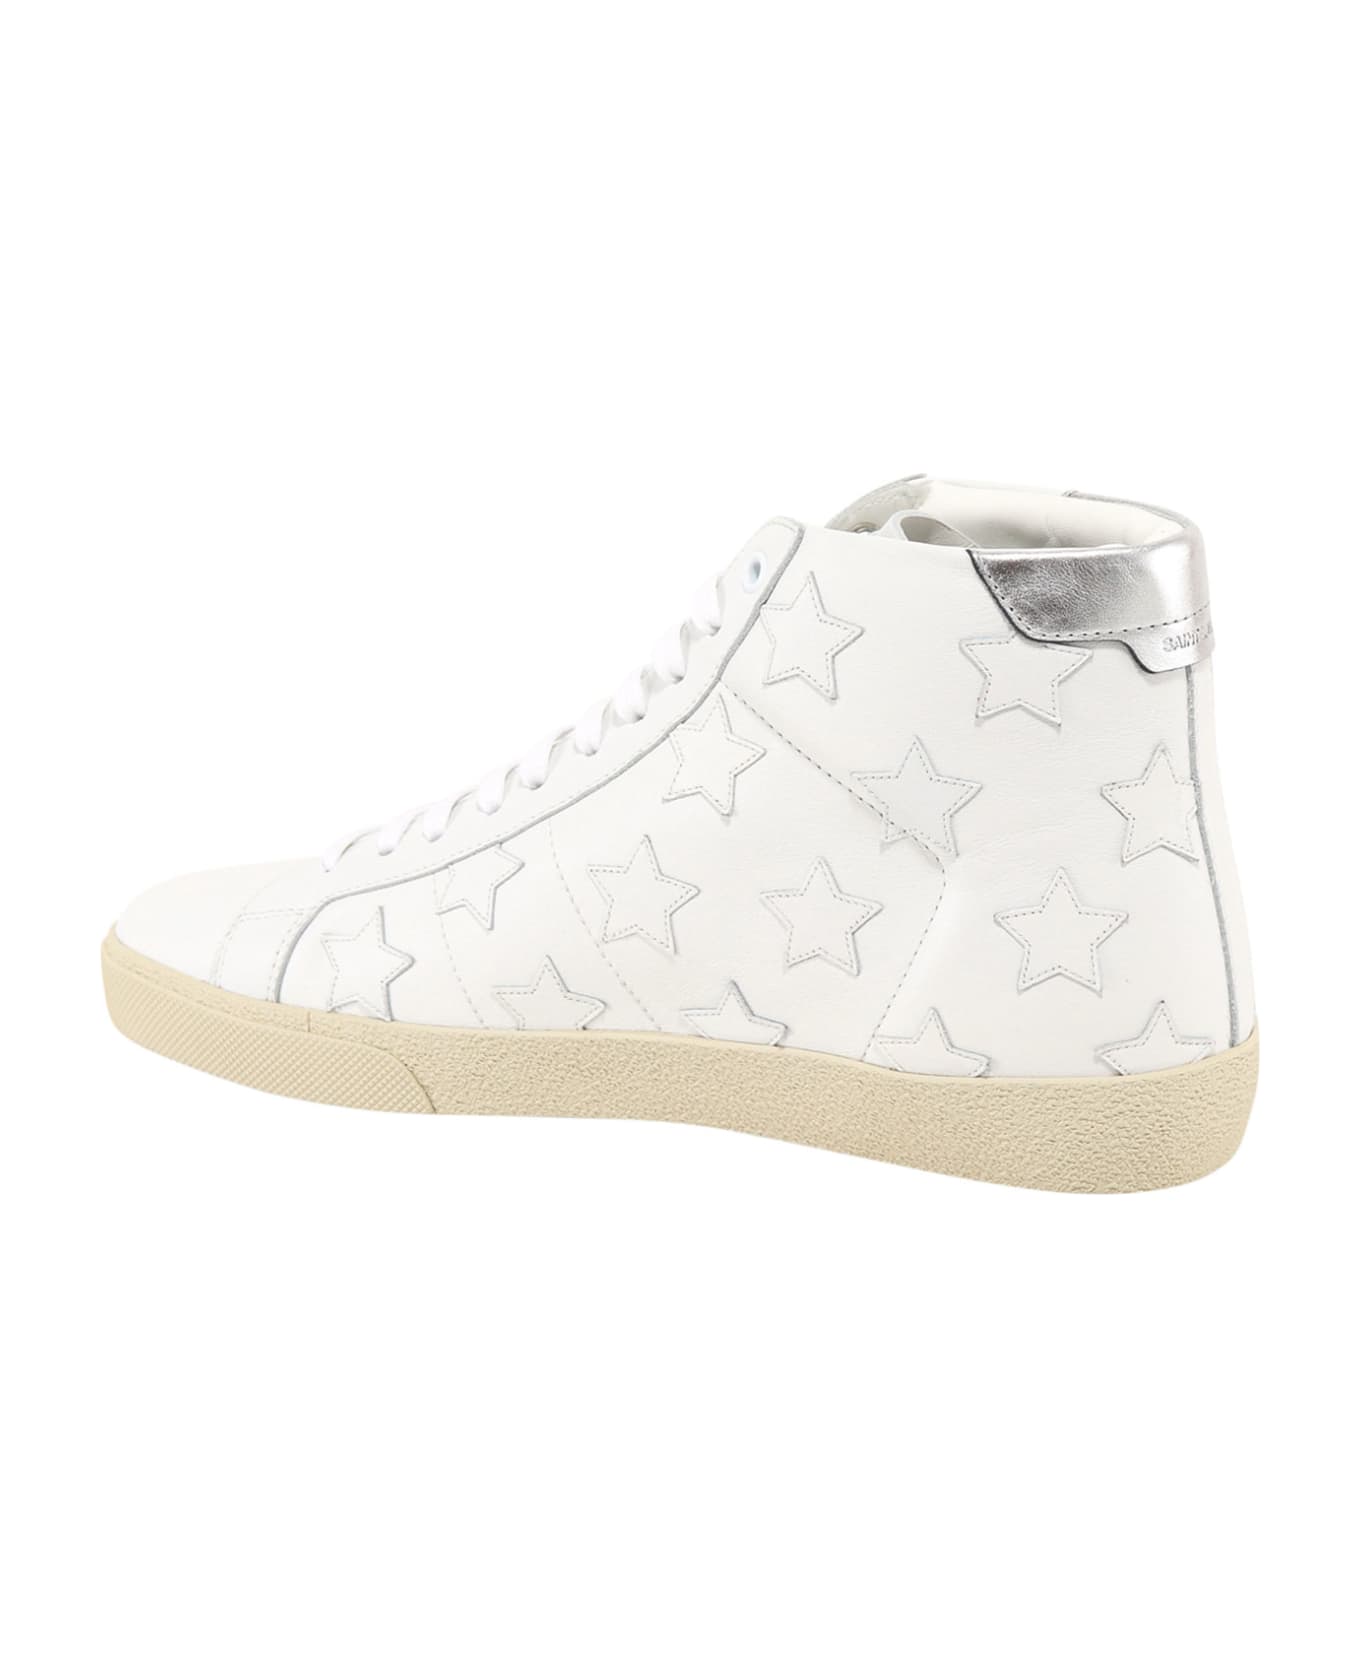 Saint Laurent Sneakers - Bianco